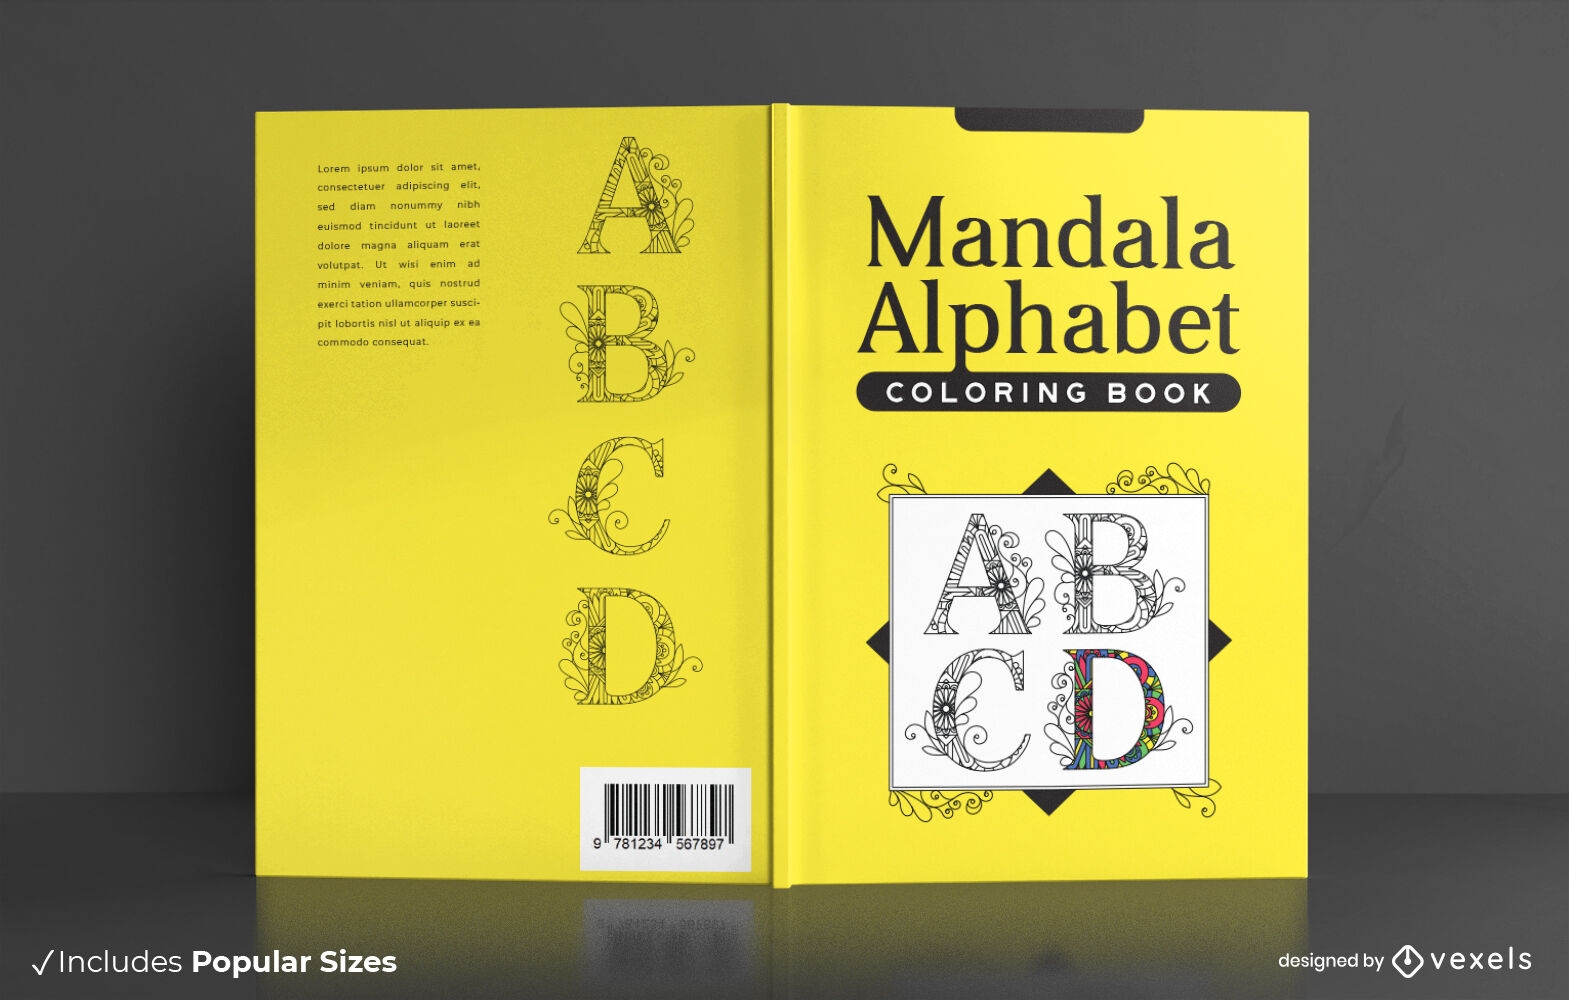 Mandala alphabet book cover design